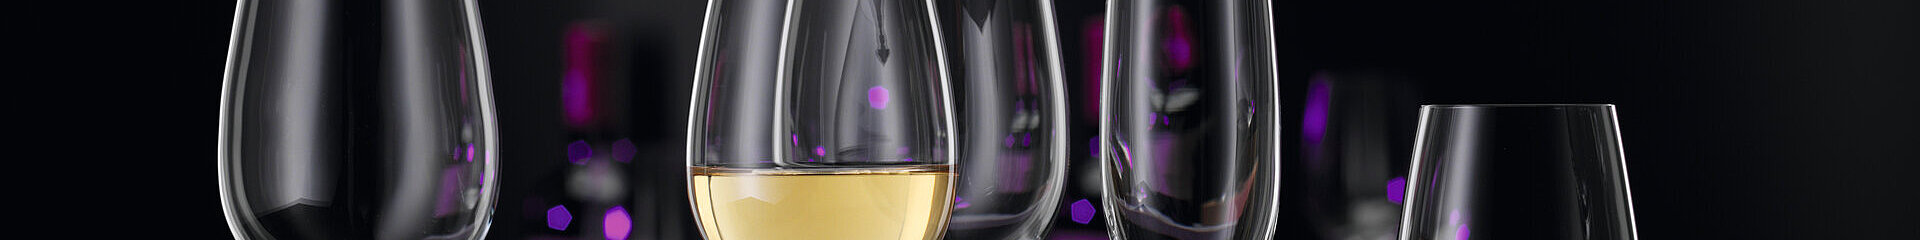 Čaša champagne, Winelovers - Spiegelau